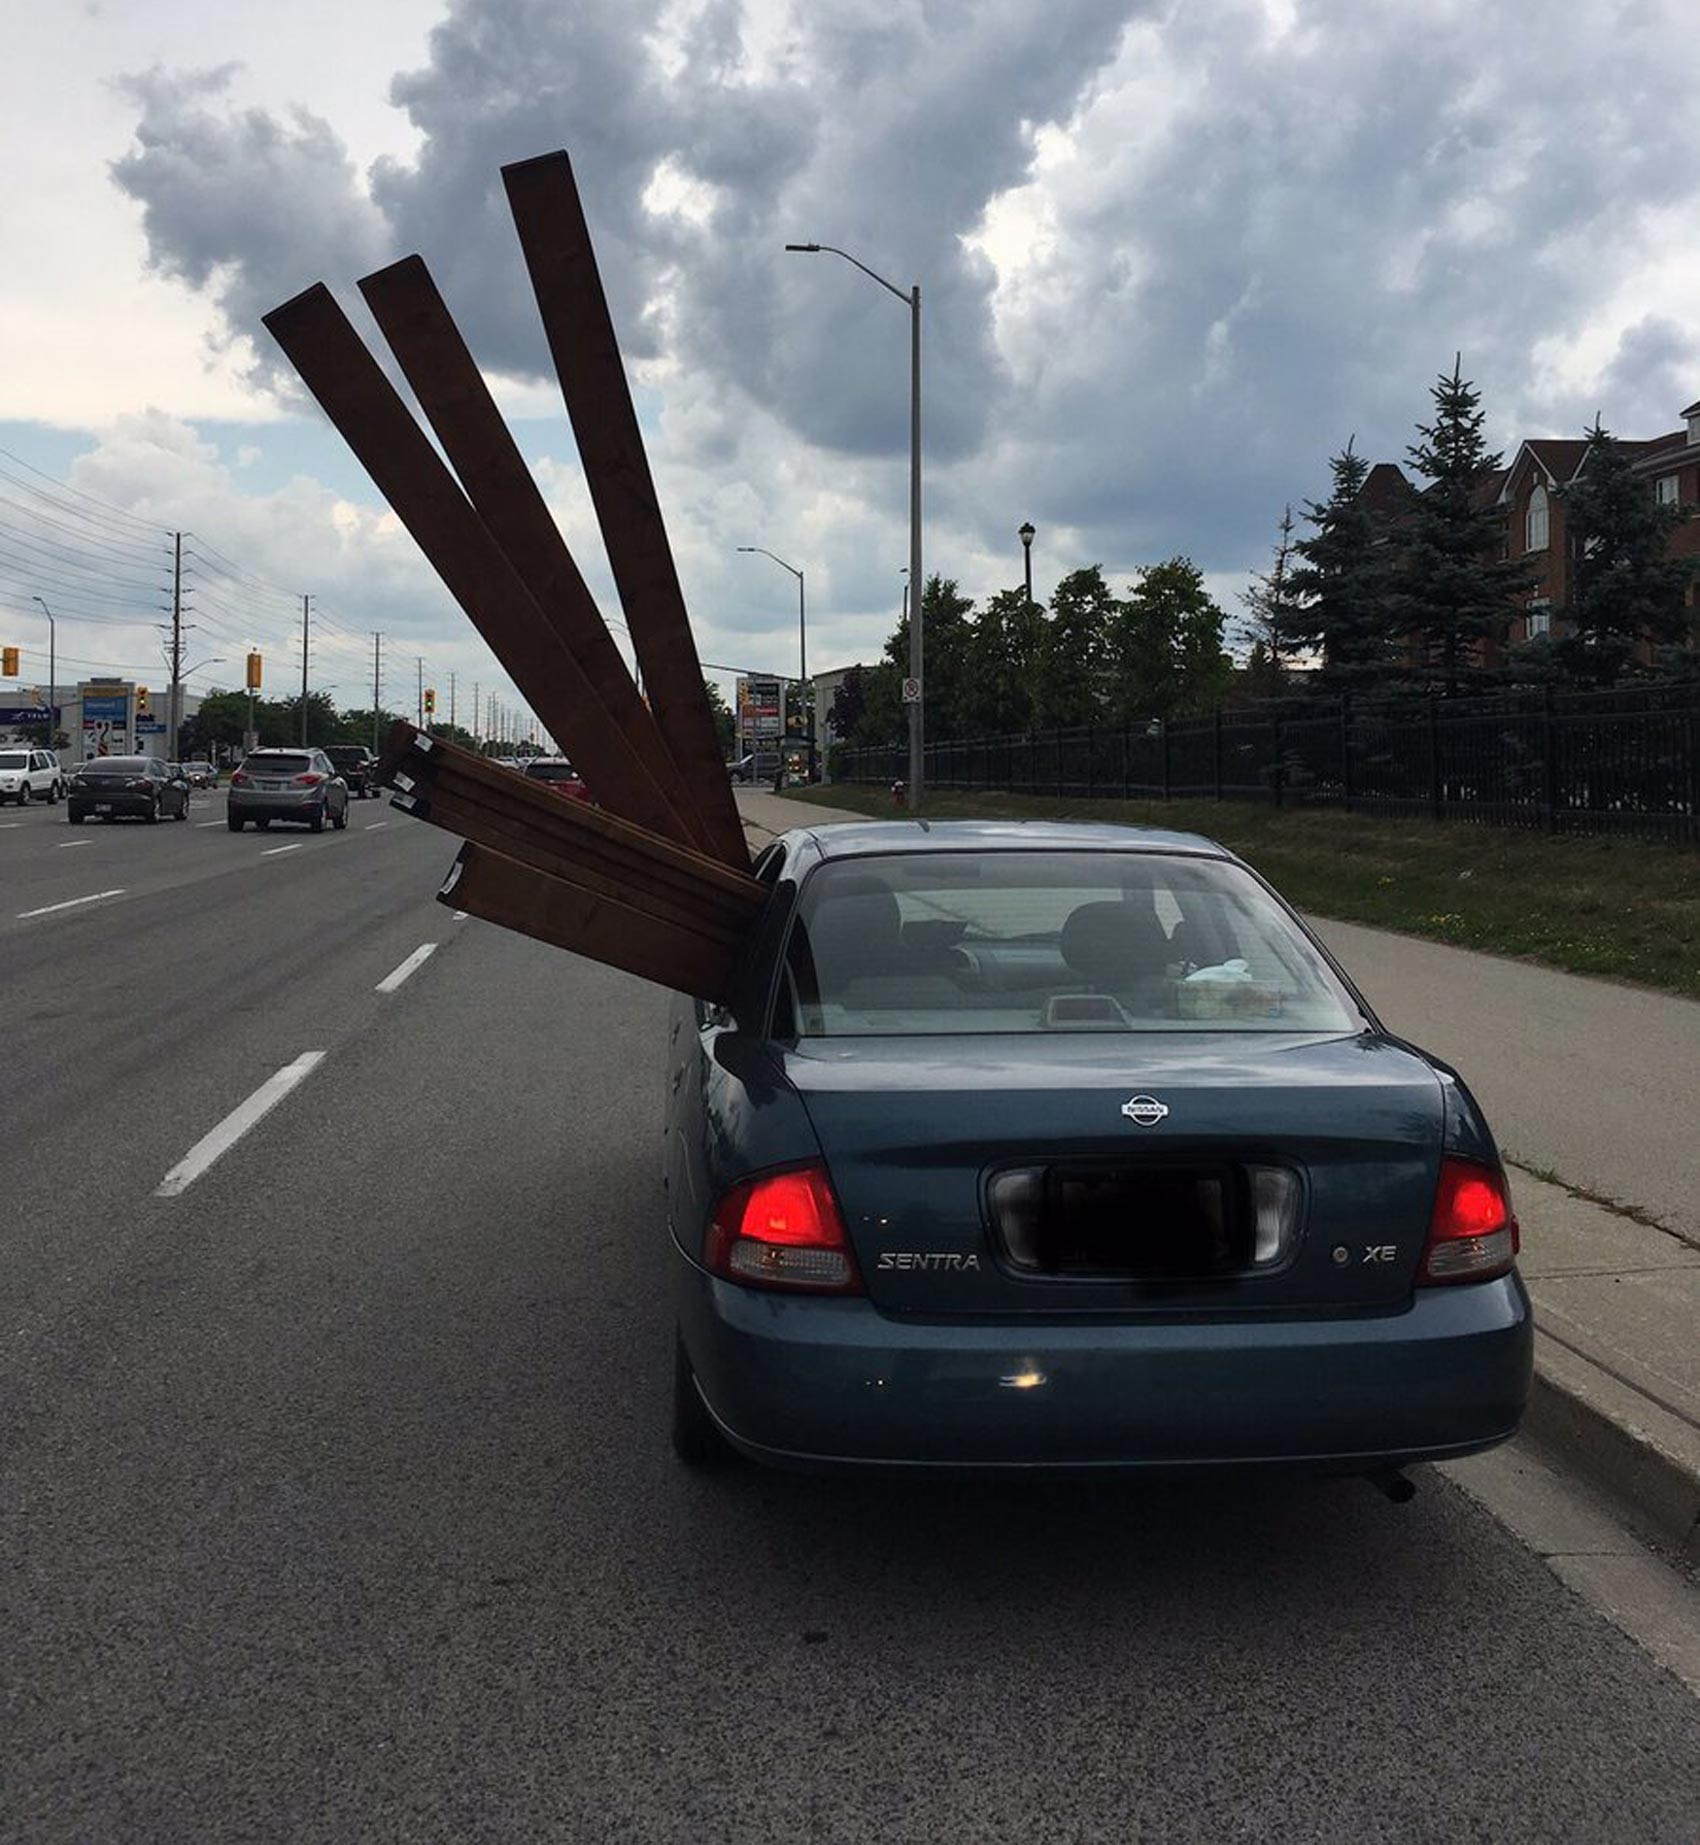 Canadense é multado por transportar madeira para fora de janela de carro